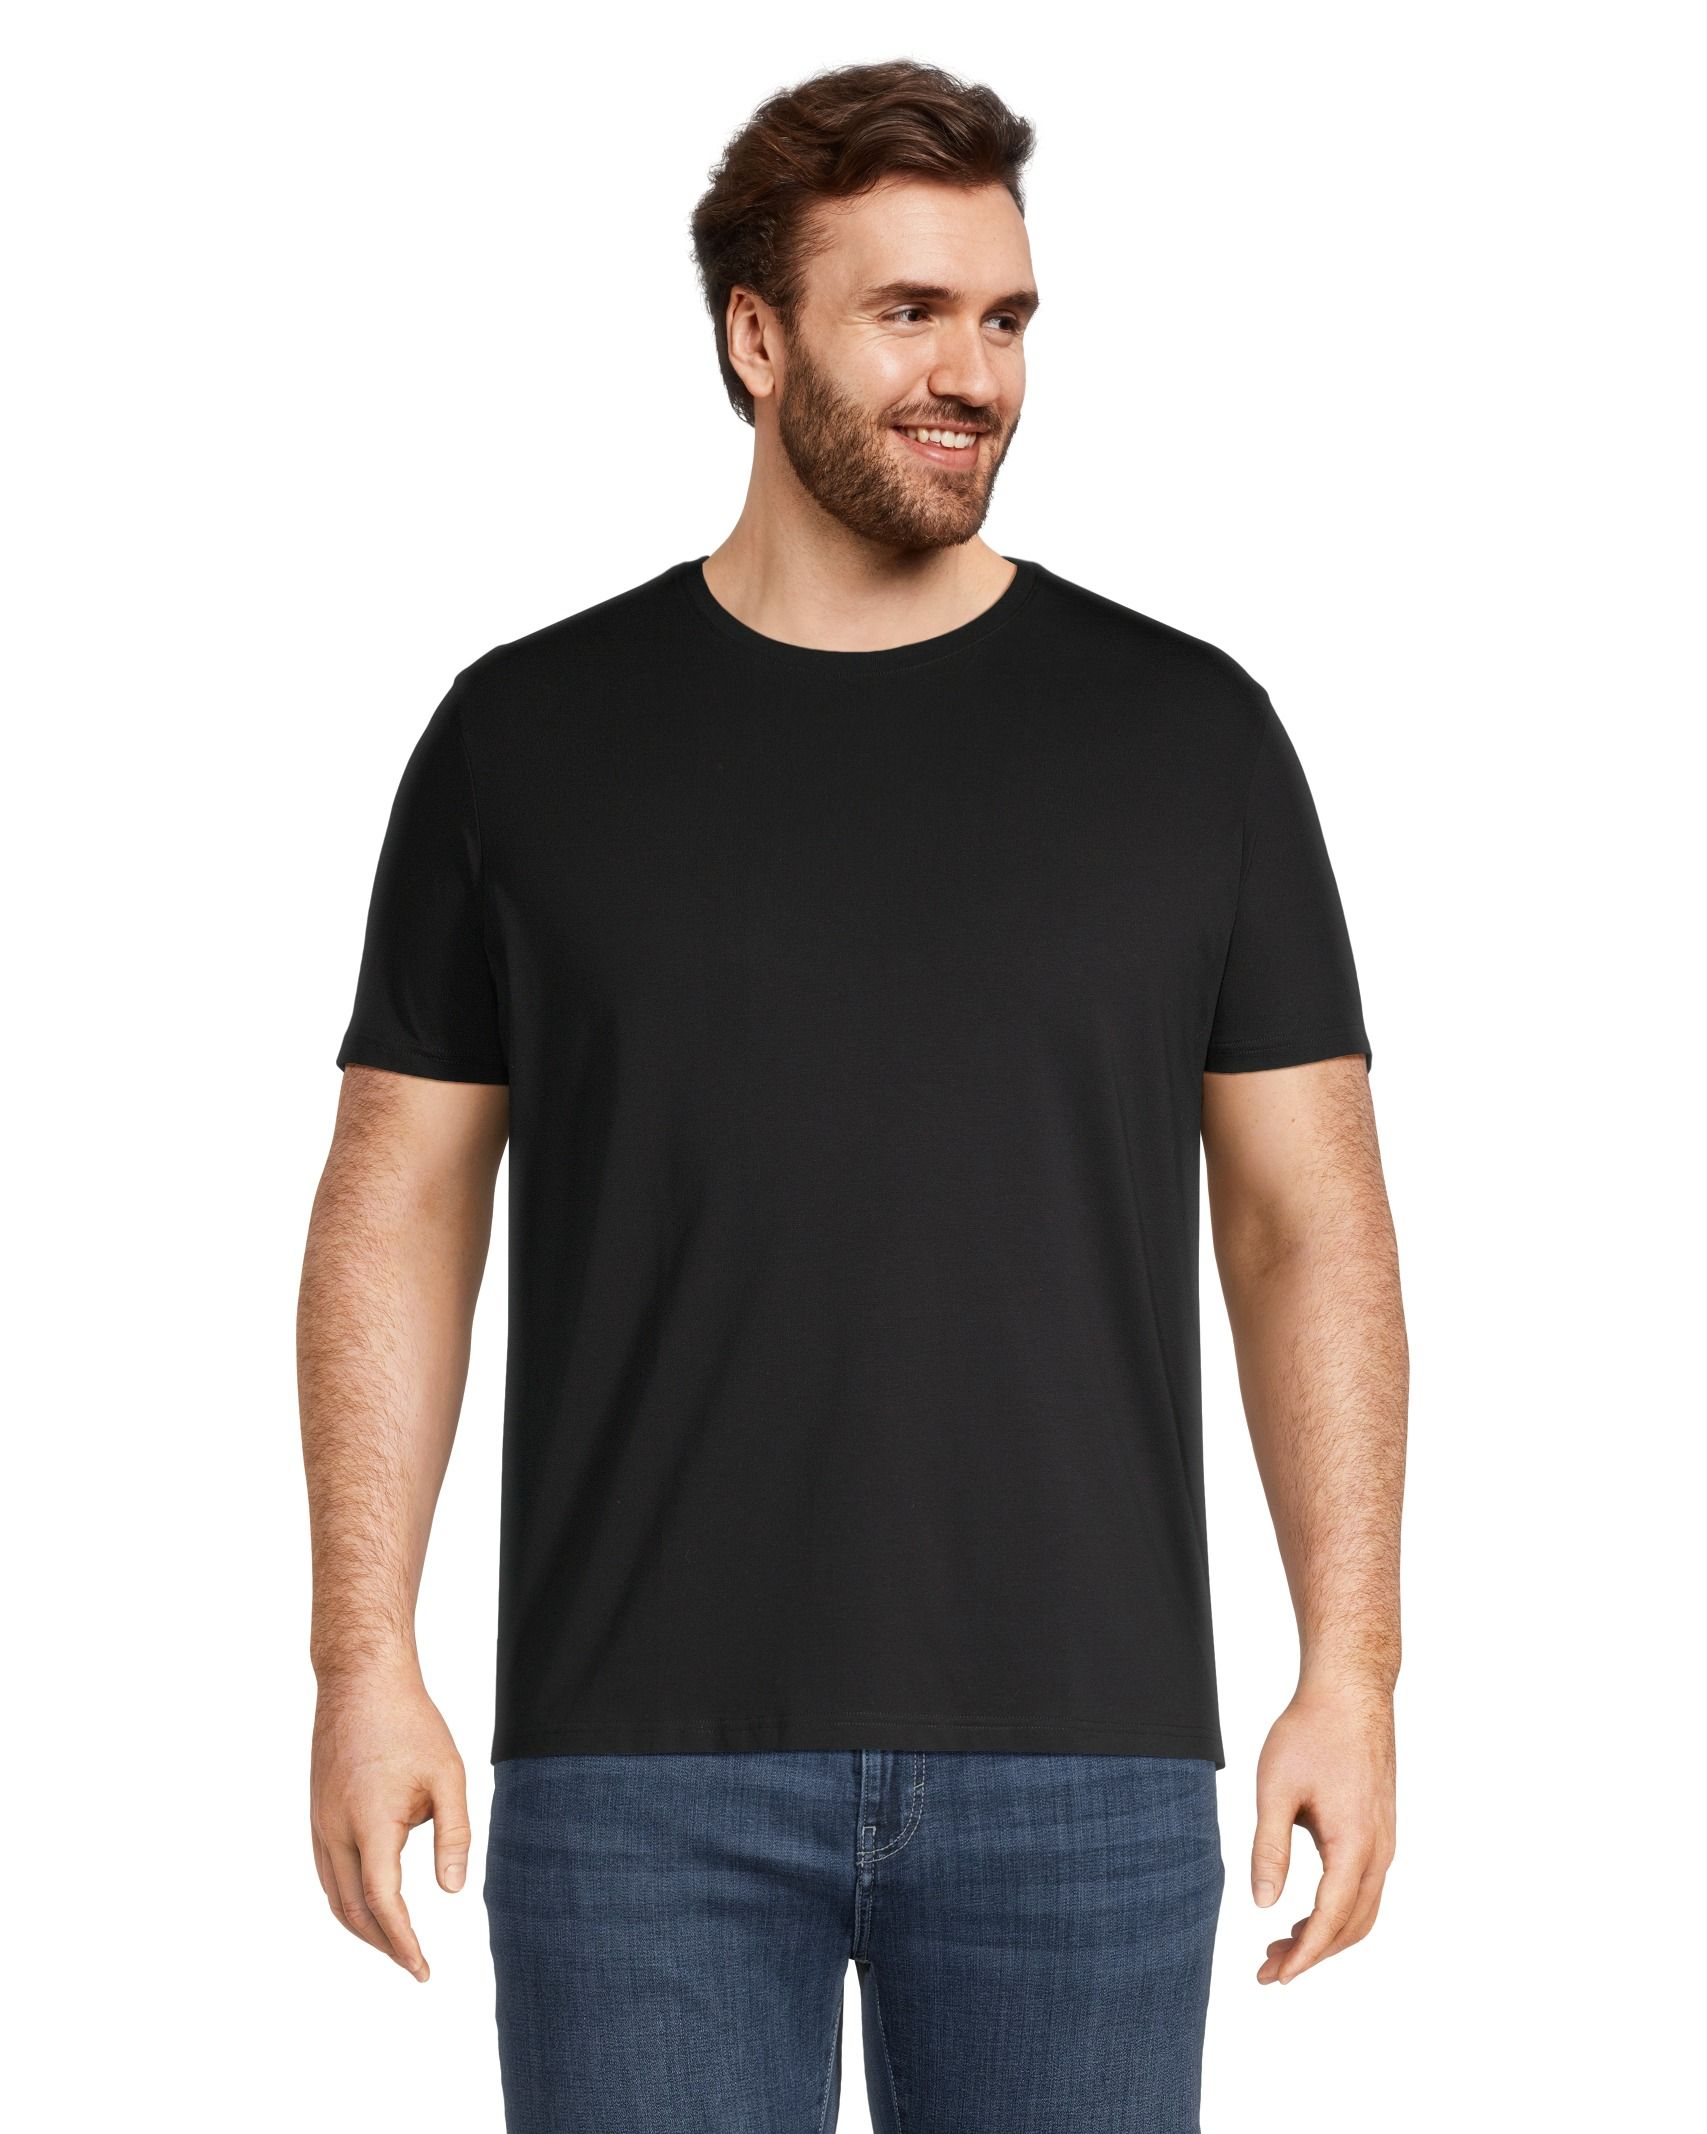 Denver Hayes Men's Stretch Modern Fit V-Neck T-Shirt